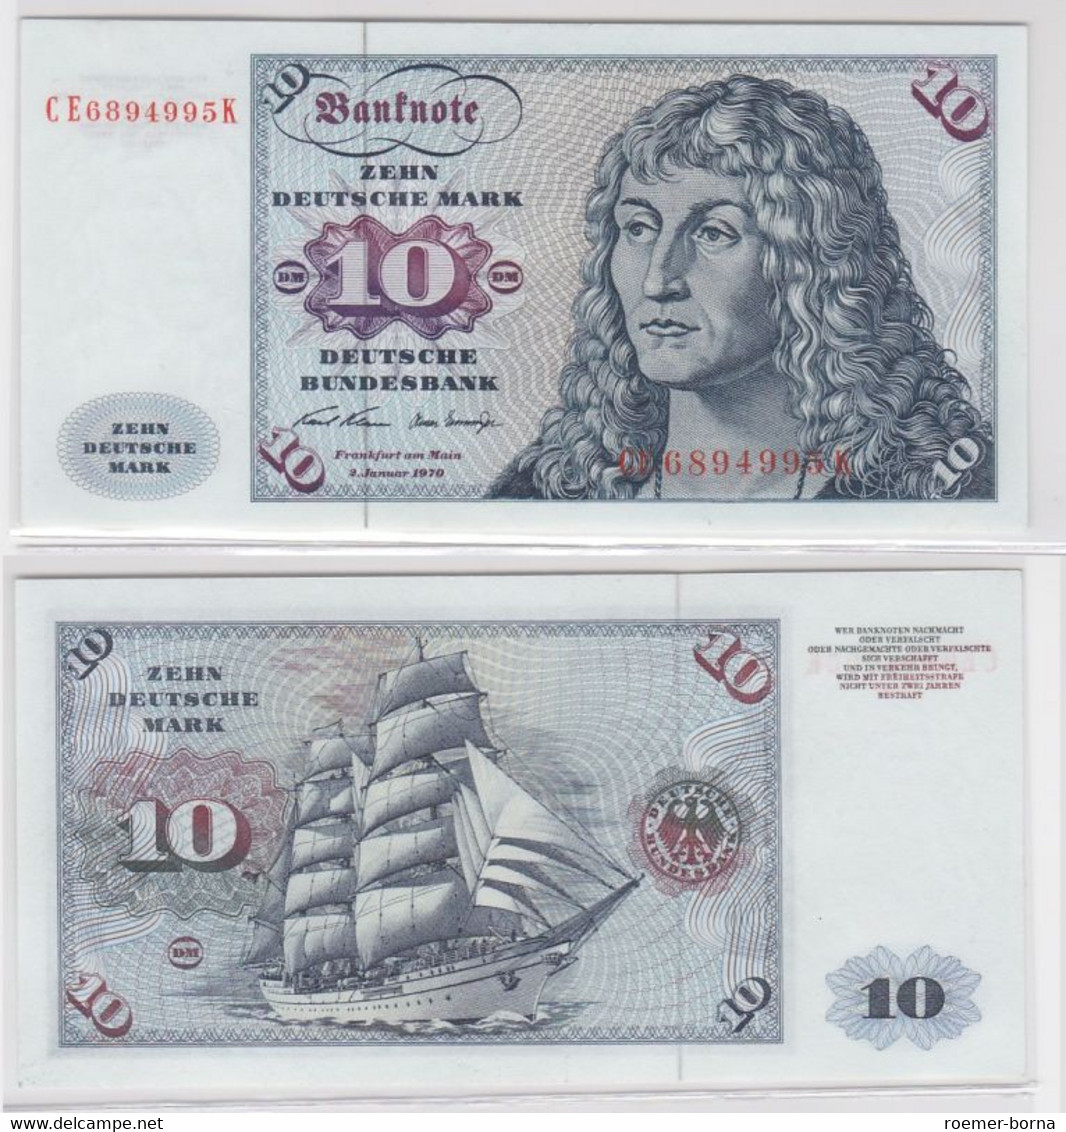 T146732 Banknote 10 DM Deutsche Mark Ro. 270b Schein 2.Jan. 1970 KN CE 6894995 K - 10 DM